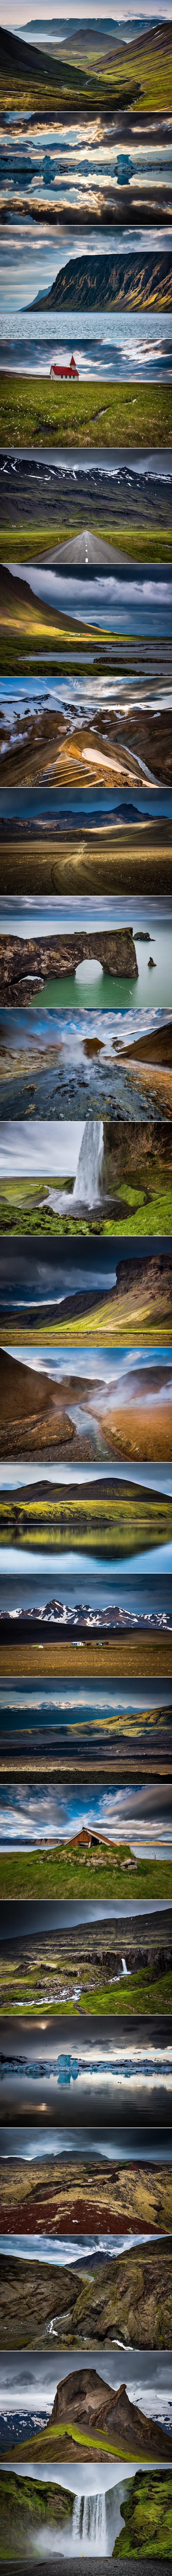 GALERIJA: Jedan se fotograf zaljubio u čarobnu ljepotu Islanda - ovo je otok kroz njegove oči